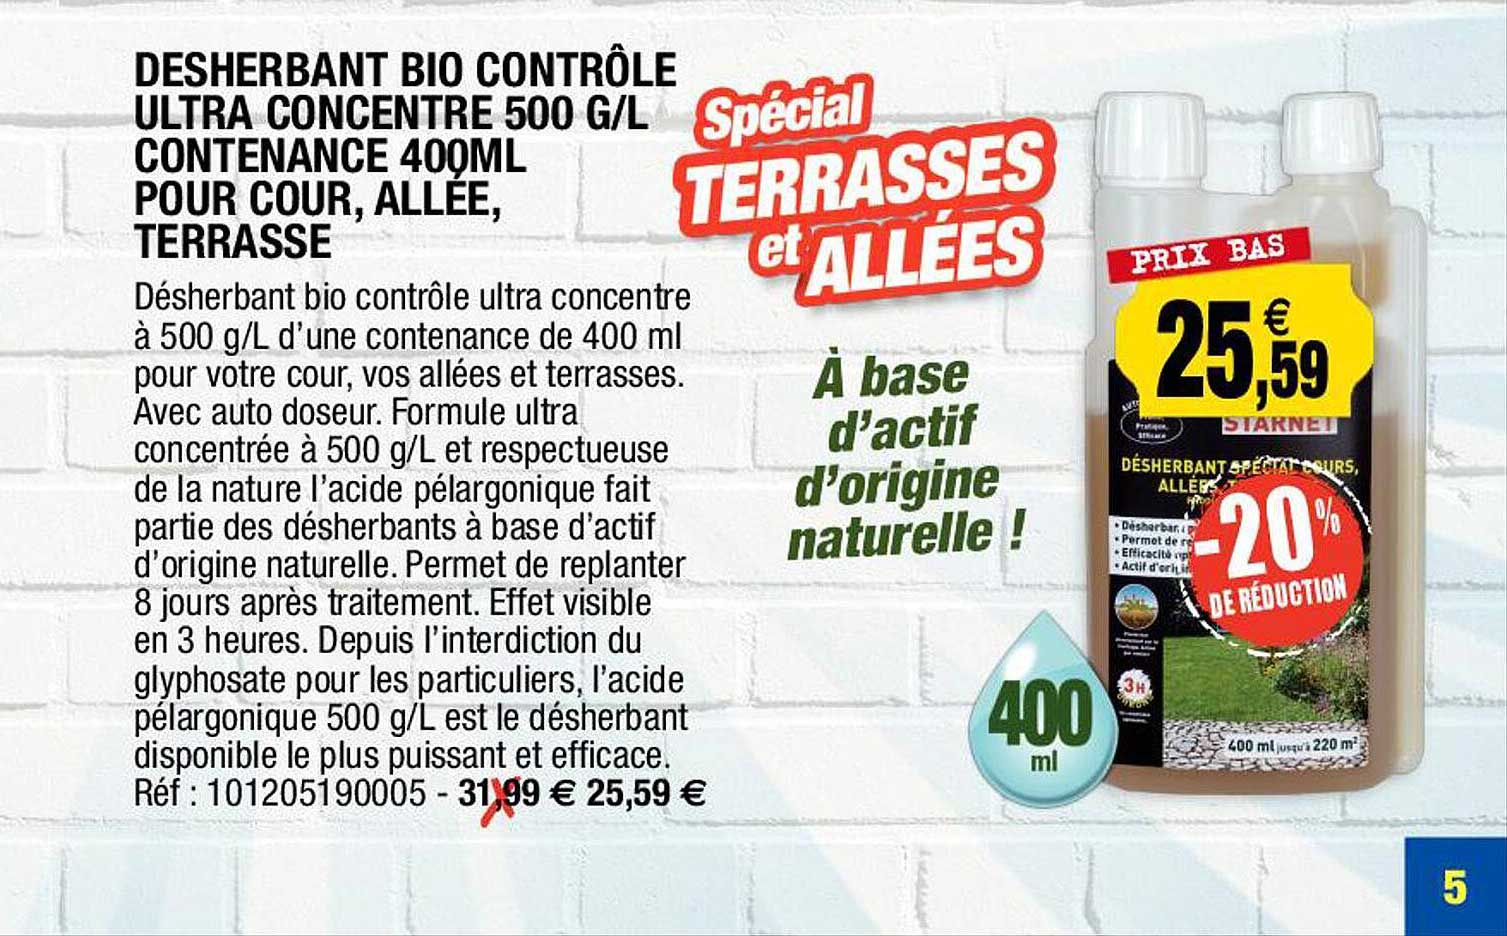 Promo Désherbant Bio Contrôle Ultra Concentré 500 G/l Contenance